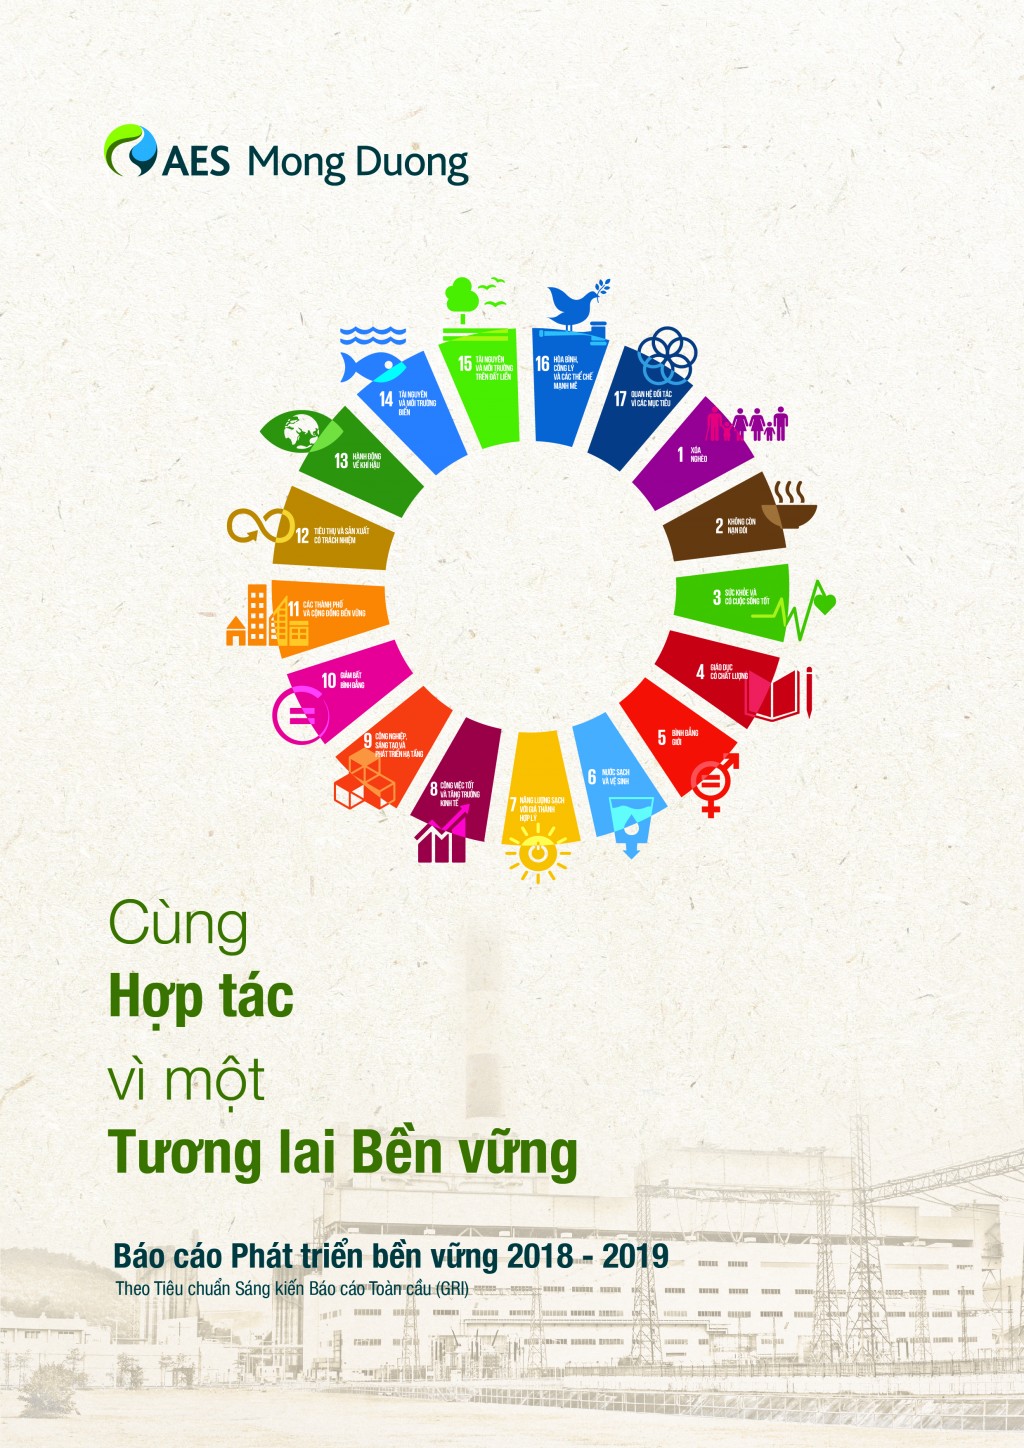 Những đóng góp của AES Mông Dương đối với phát triển bền vững tại Việt Nam